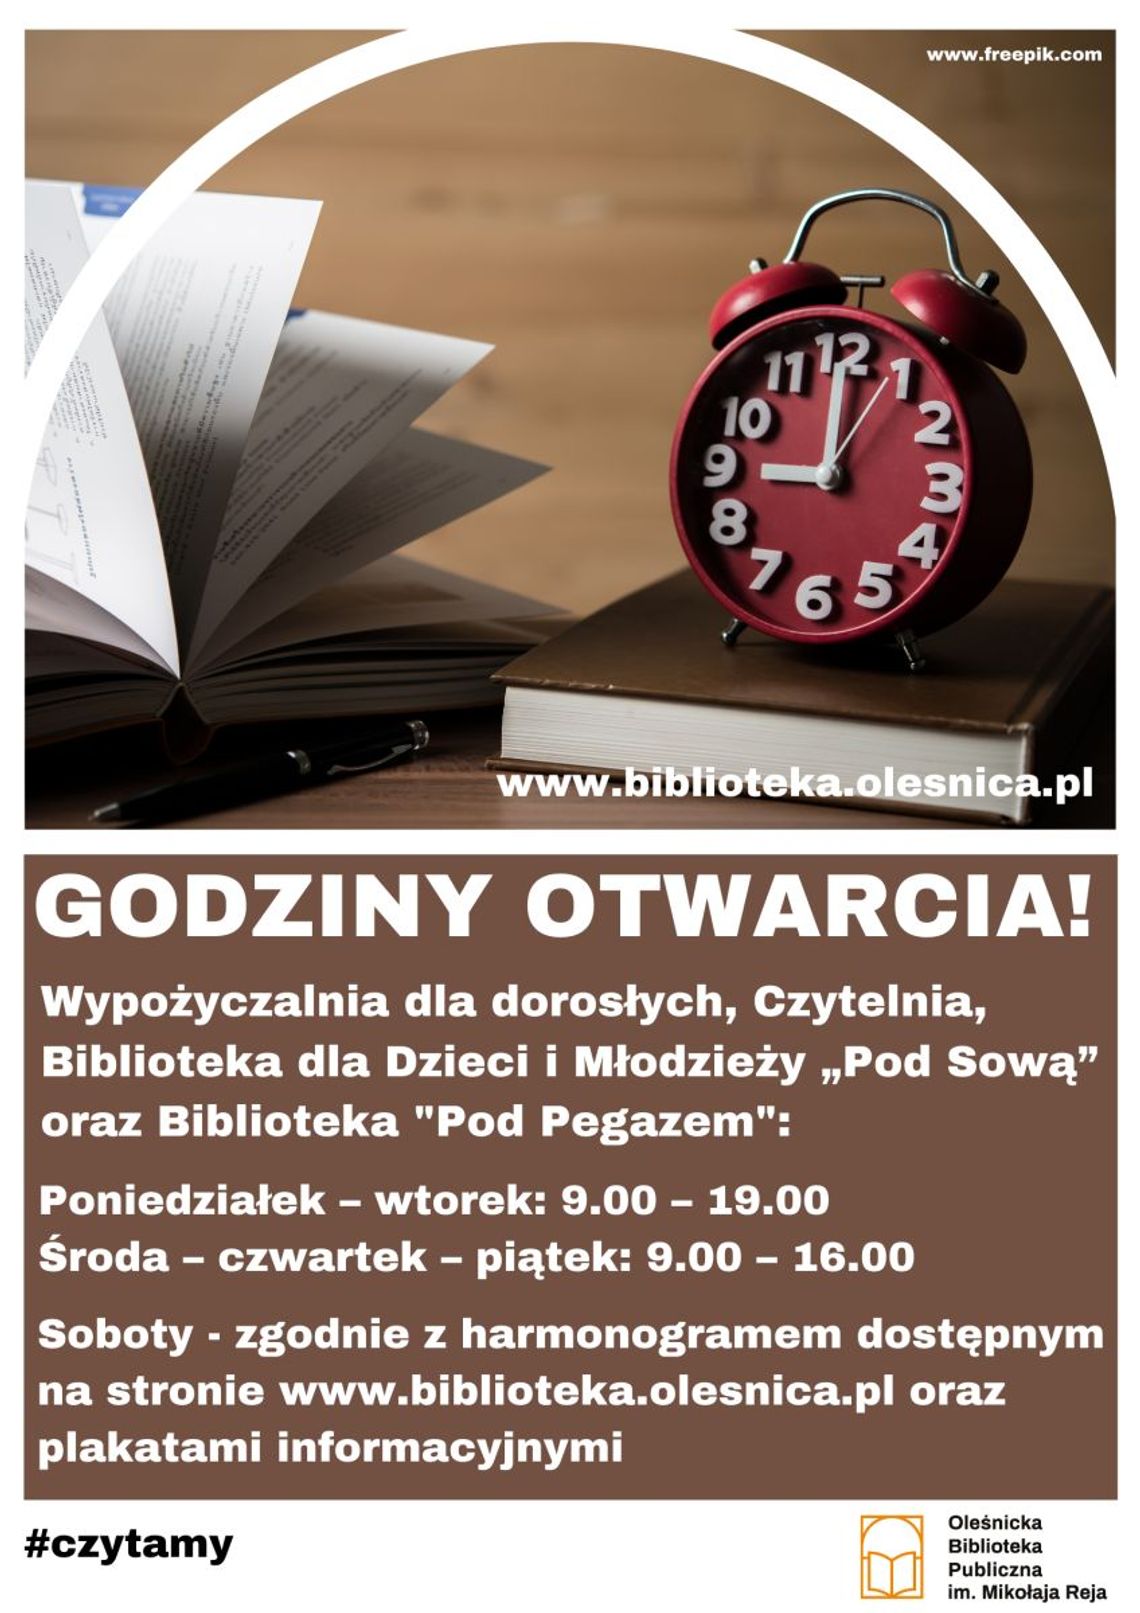 Oleśnicka Biblioteka Publiczna wznawia działalność